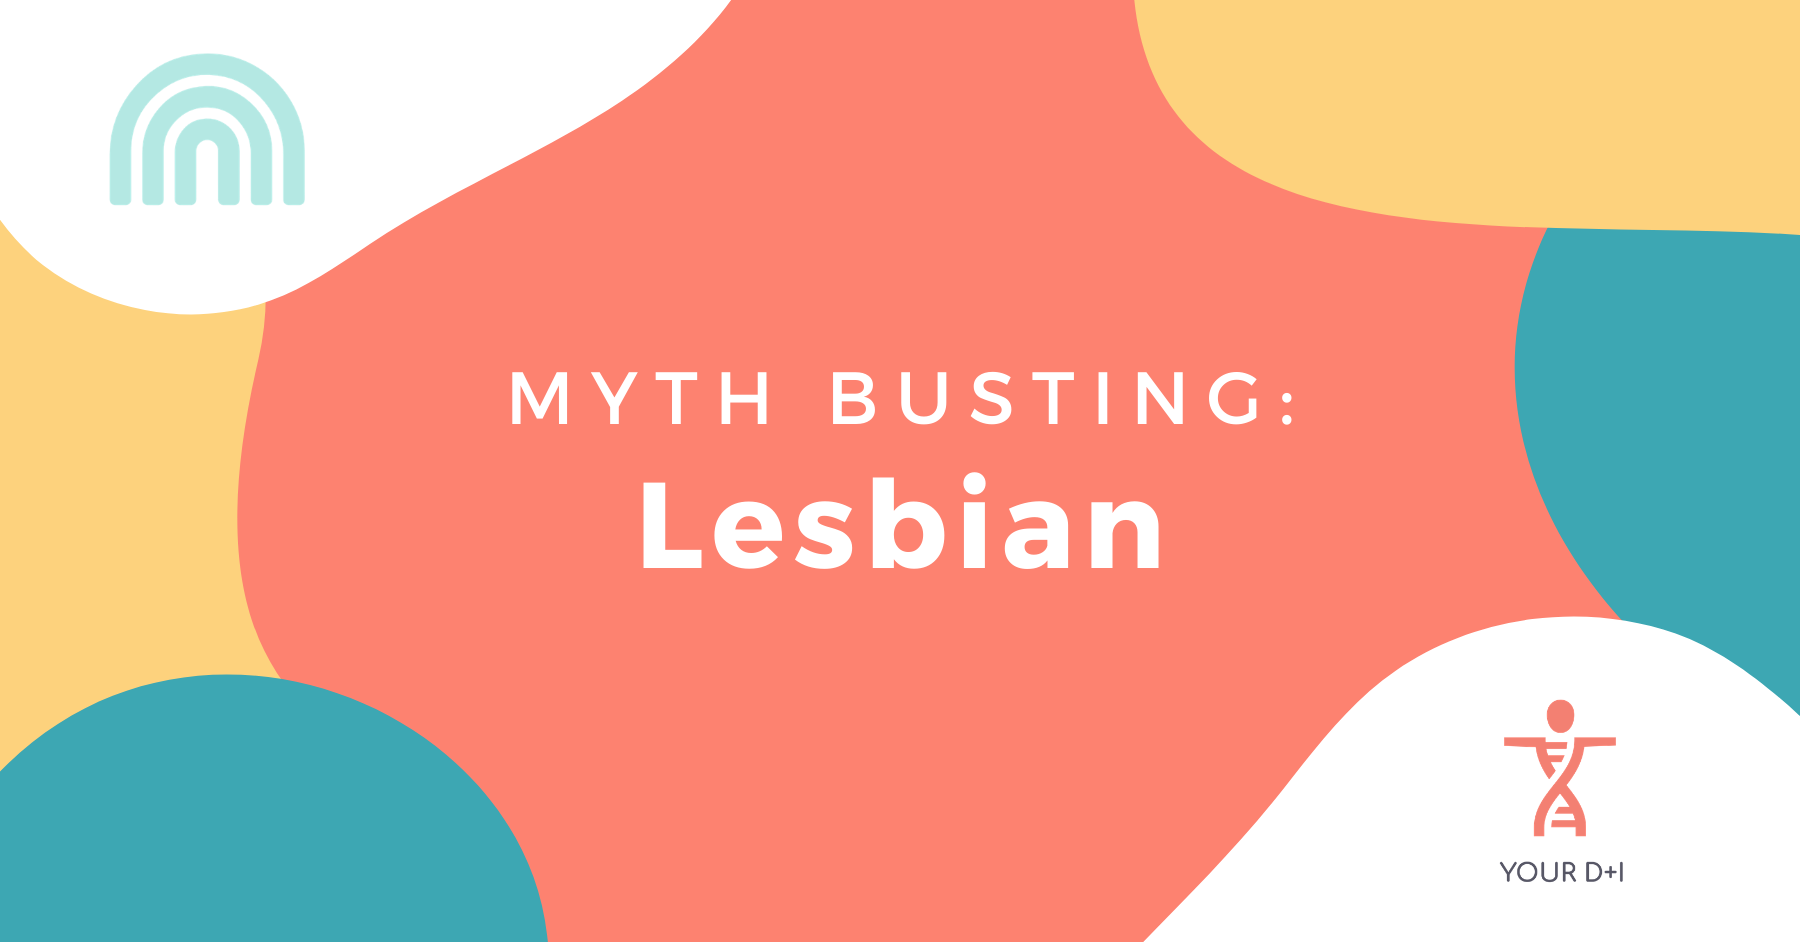 Myth Busting Lesbian Header